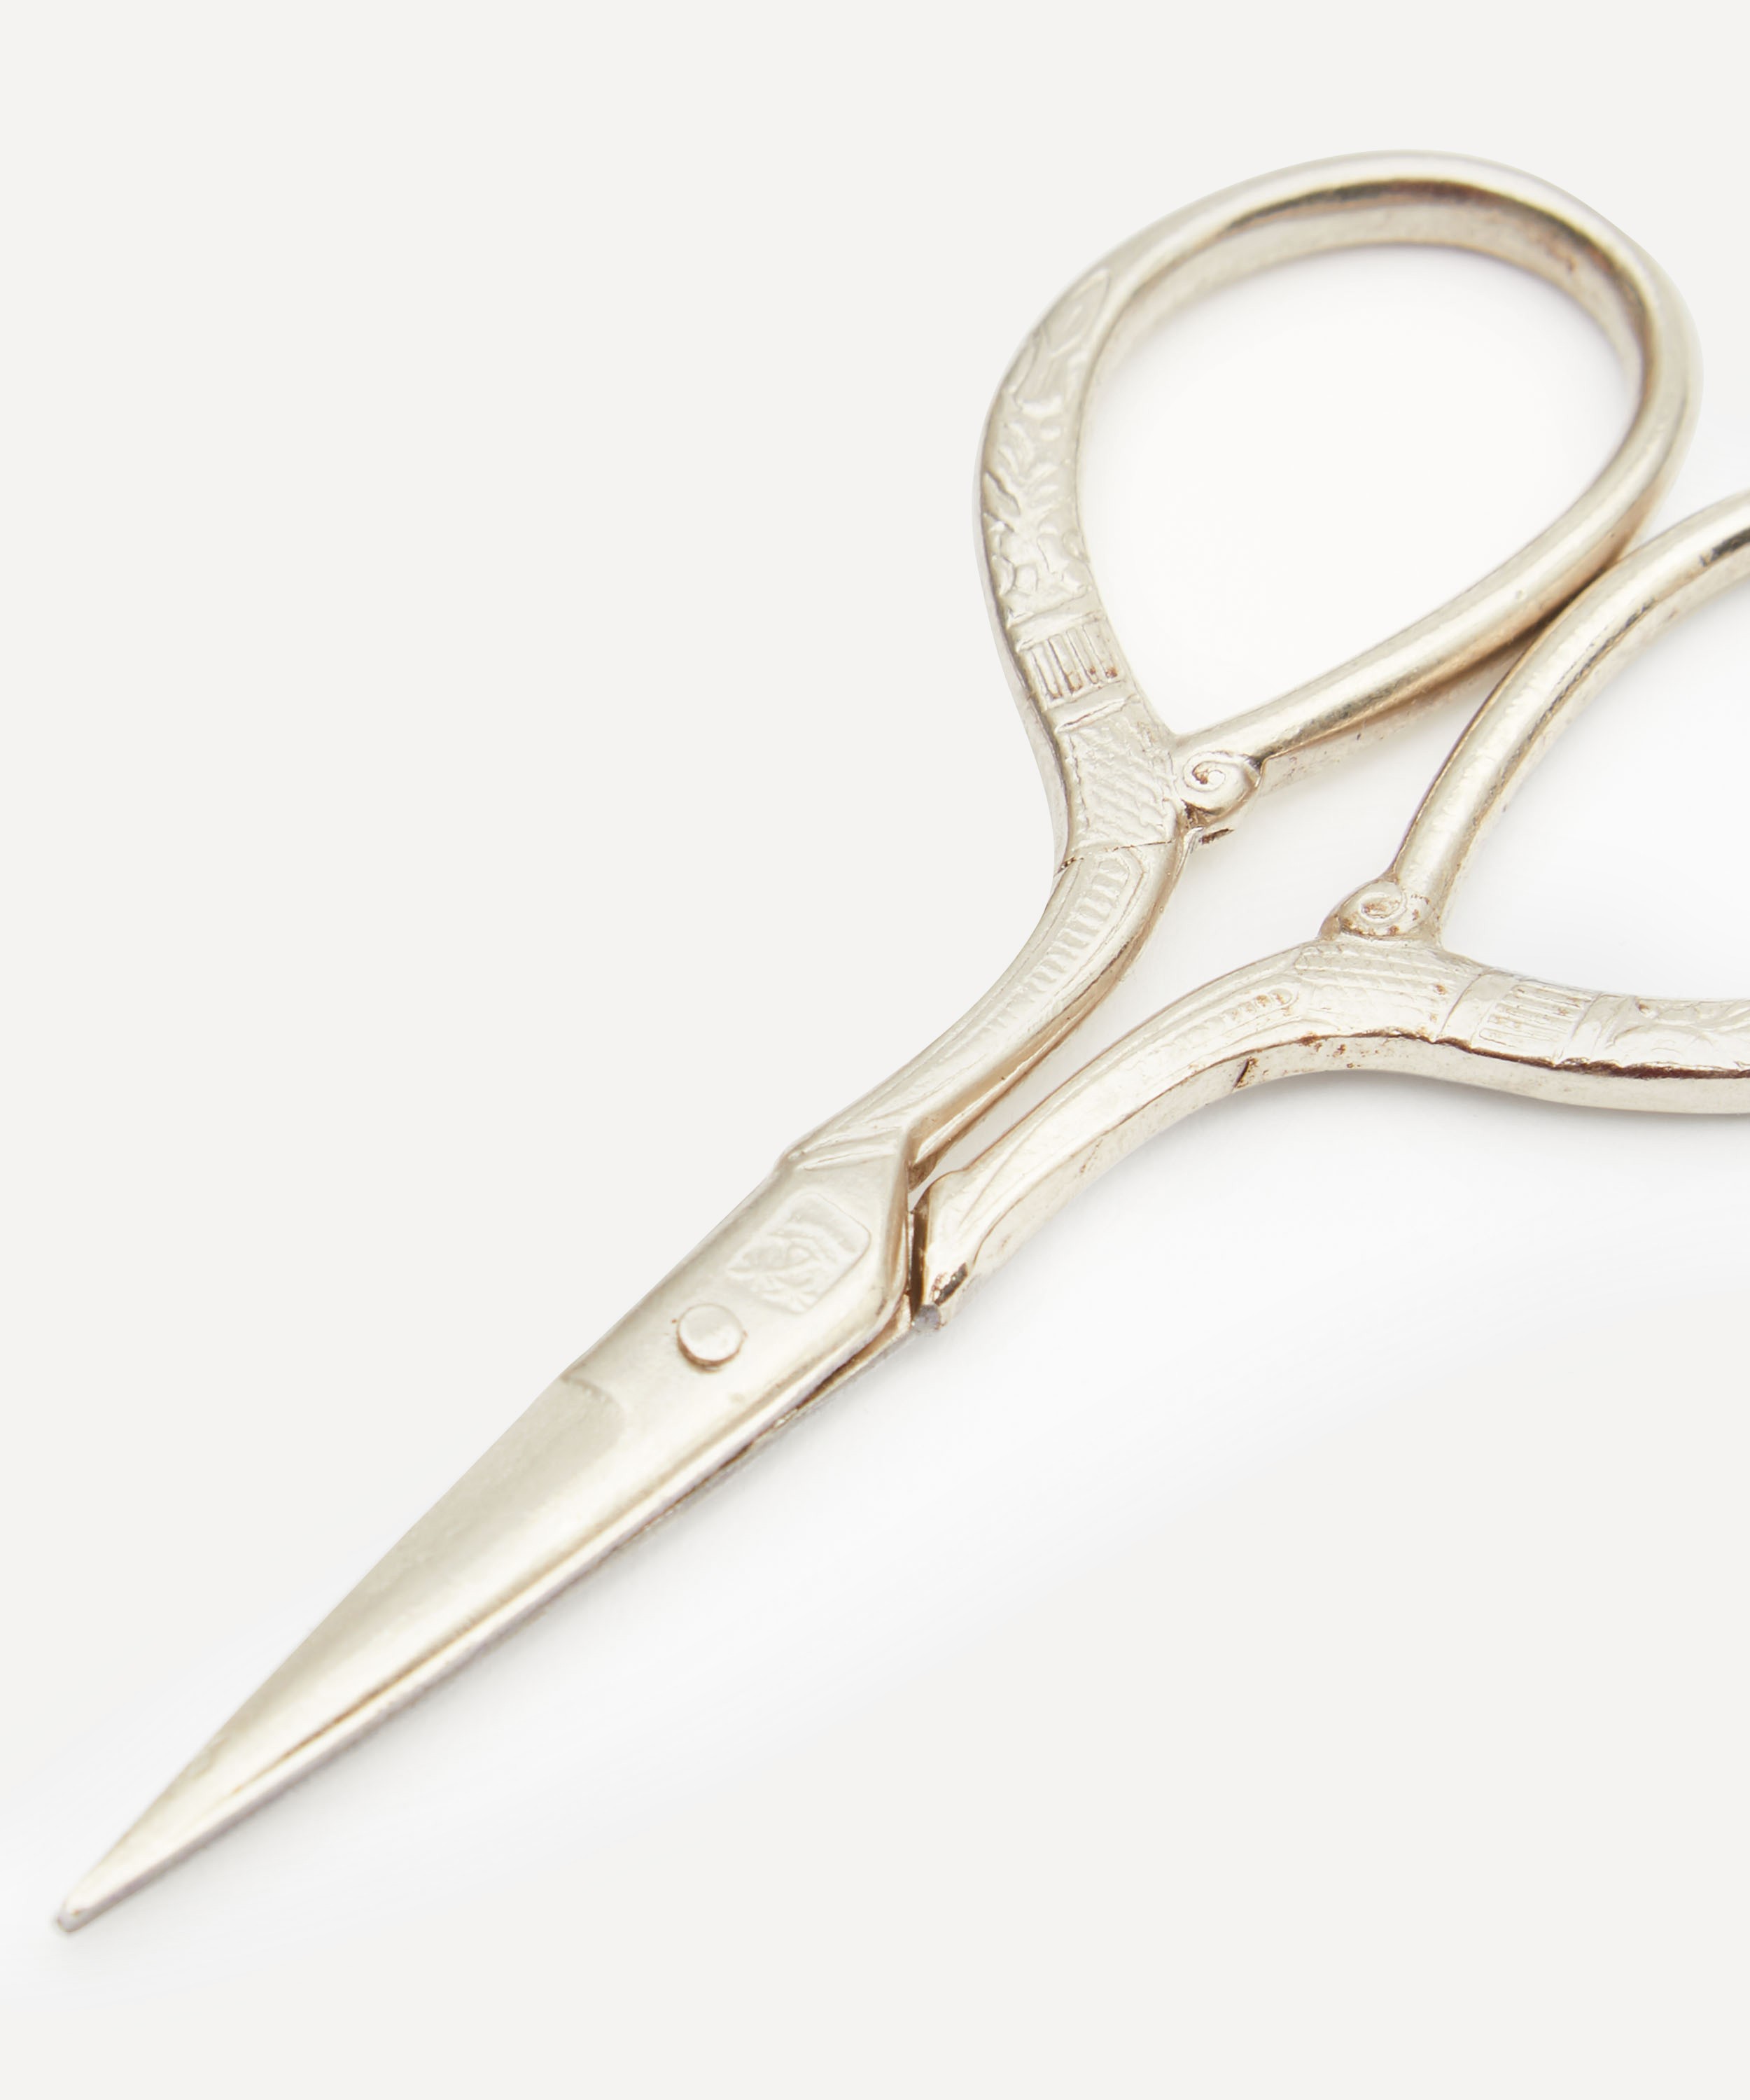 Classic Sewing Scissors 13 cm